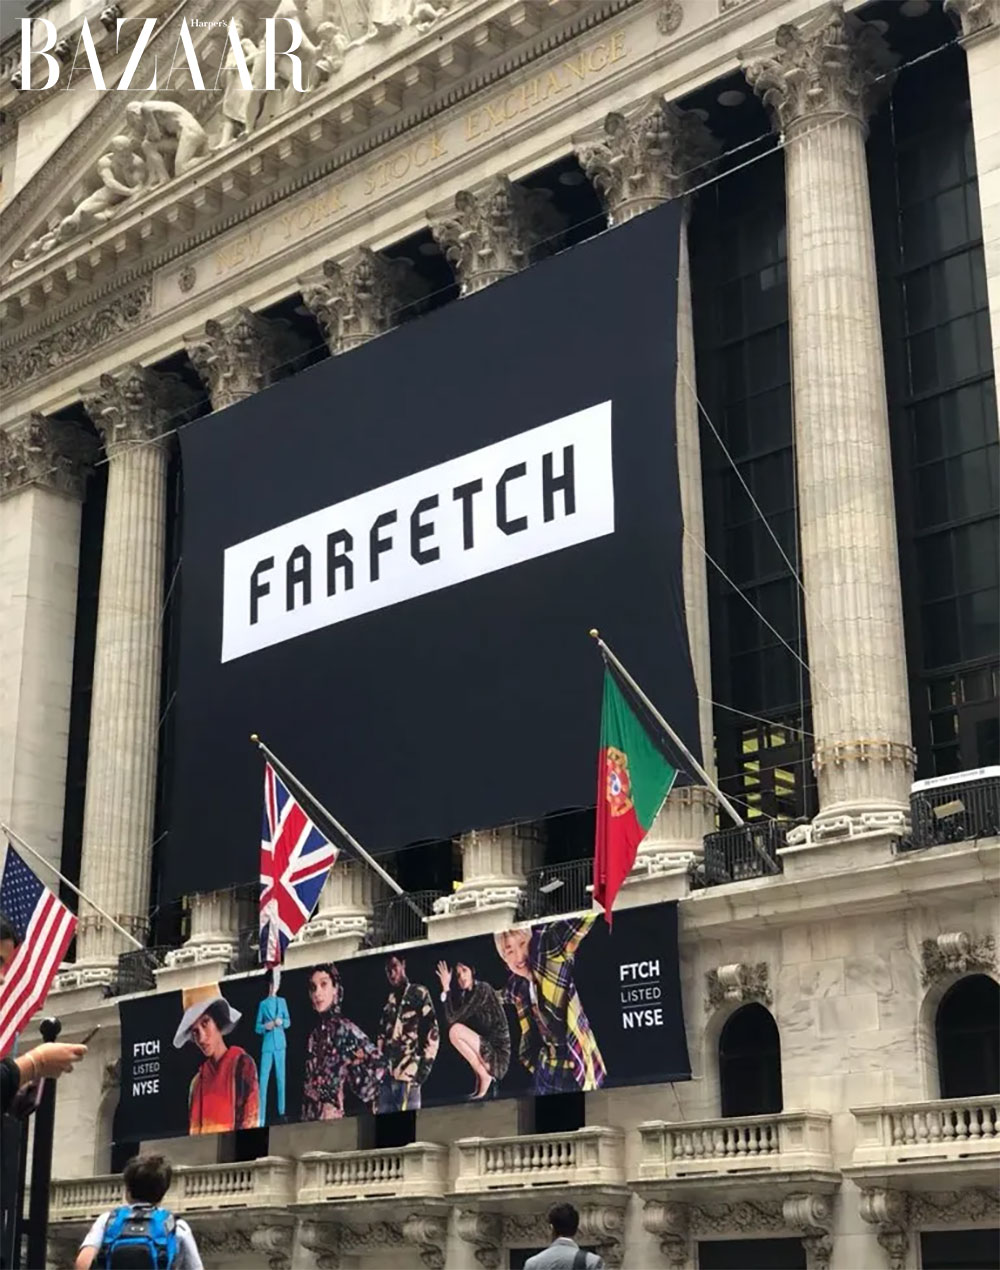 Nhà bán lẻ thời trang toàn cầu thời trang Farfetch gặp khó khăn về tài chính trong năm 2023. Nguồn: TechCrunch